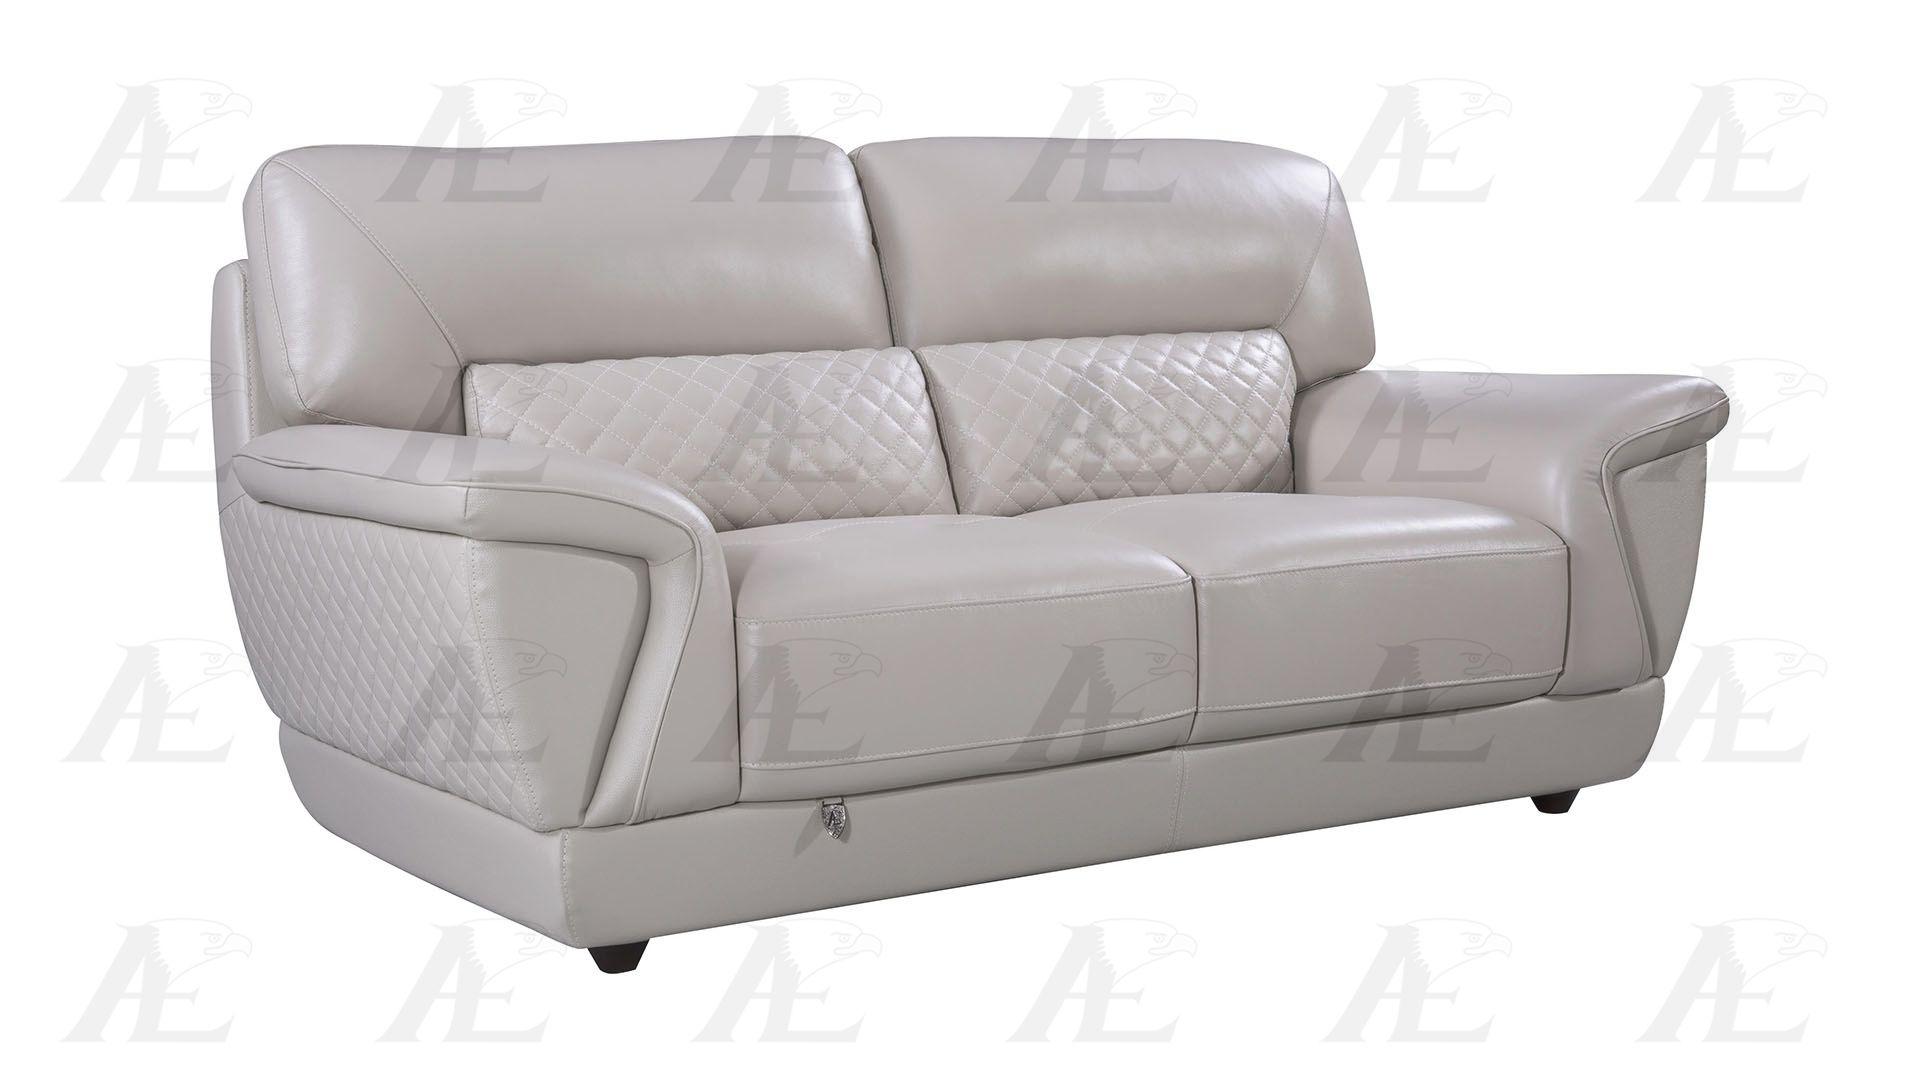 

    
EK099-LG Sofa Set
